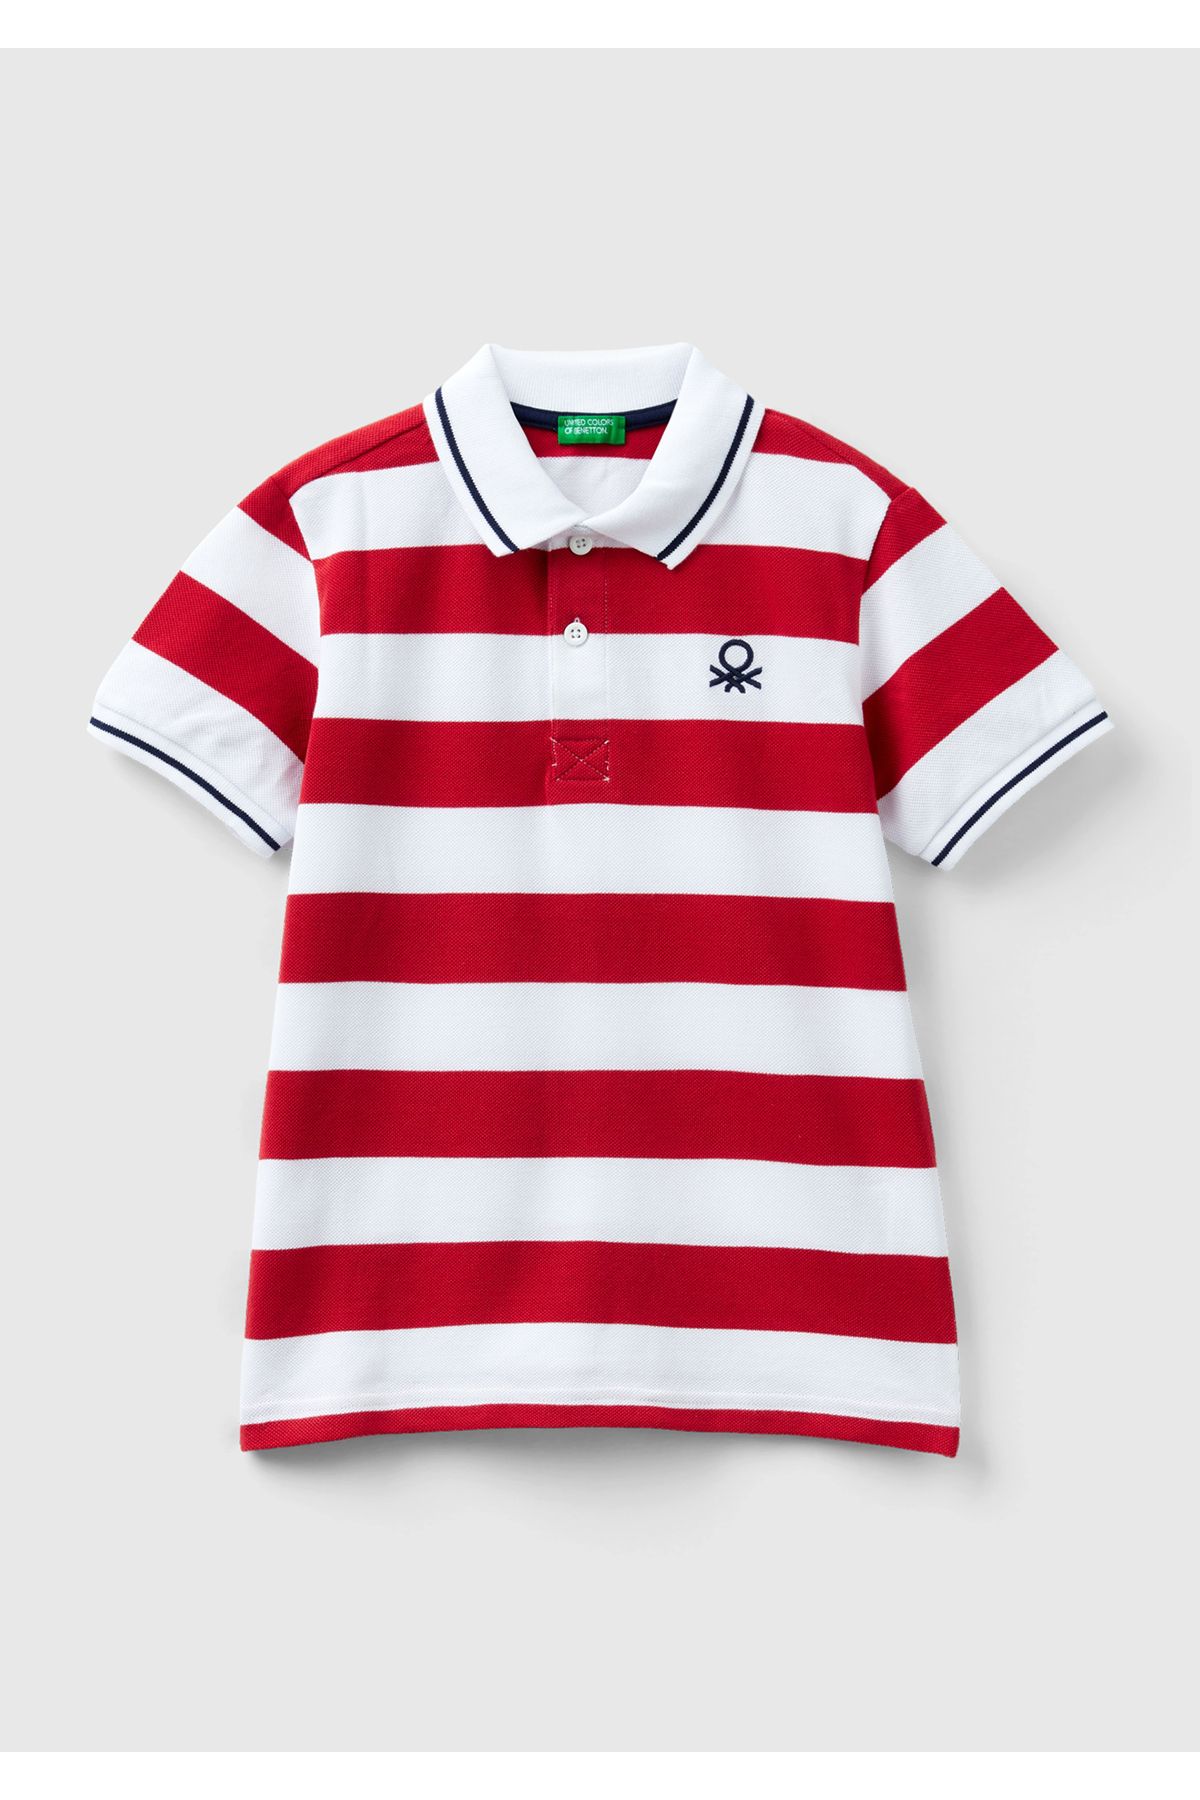 United Colors of Benetton Erkek Çocuk Kırmızı-Beyaz Logo İşlemeli Çizgili Pike Polo T-Shirt